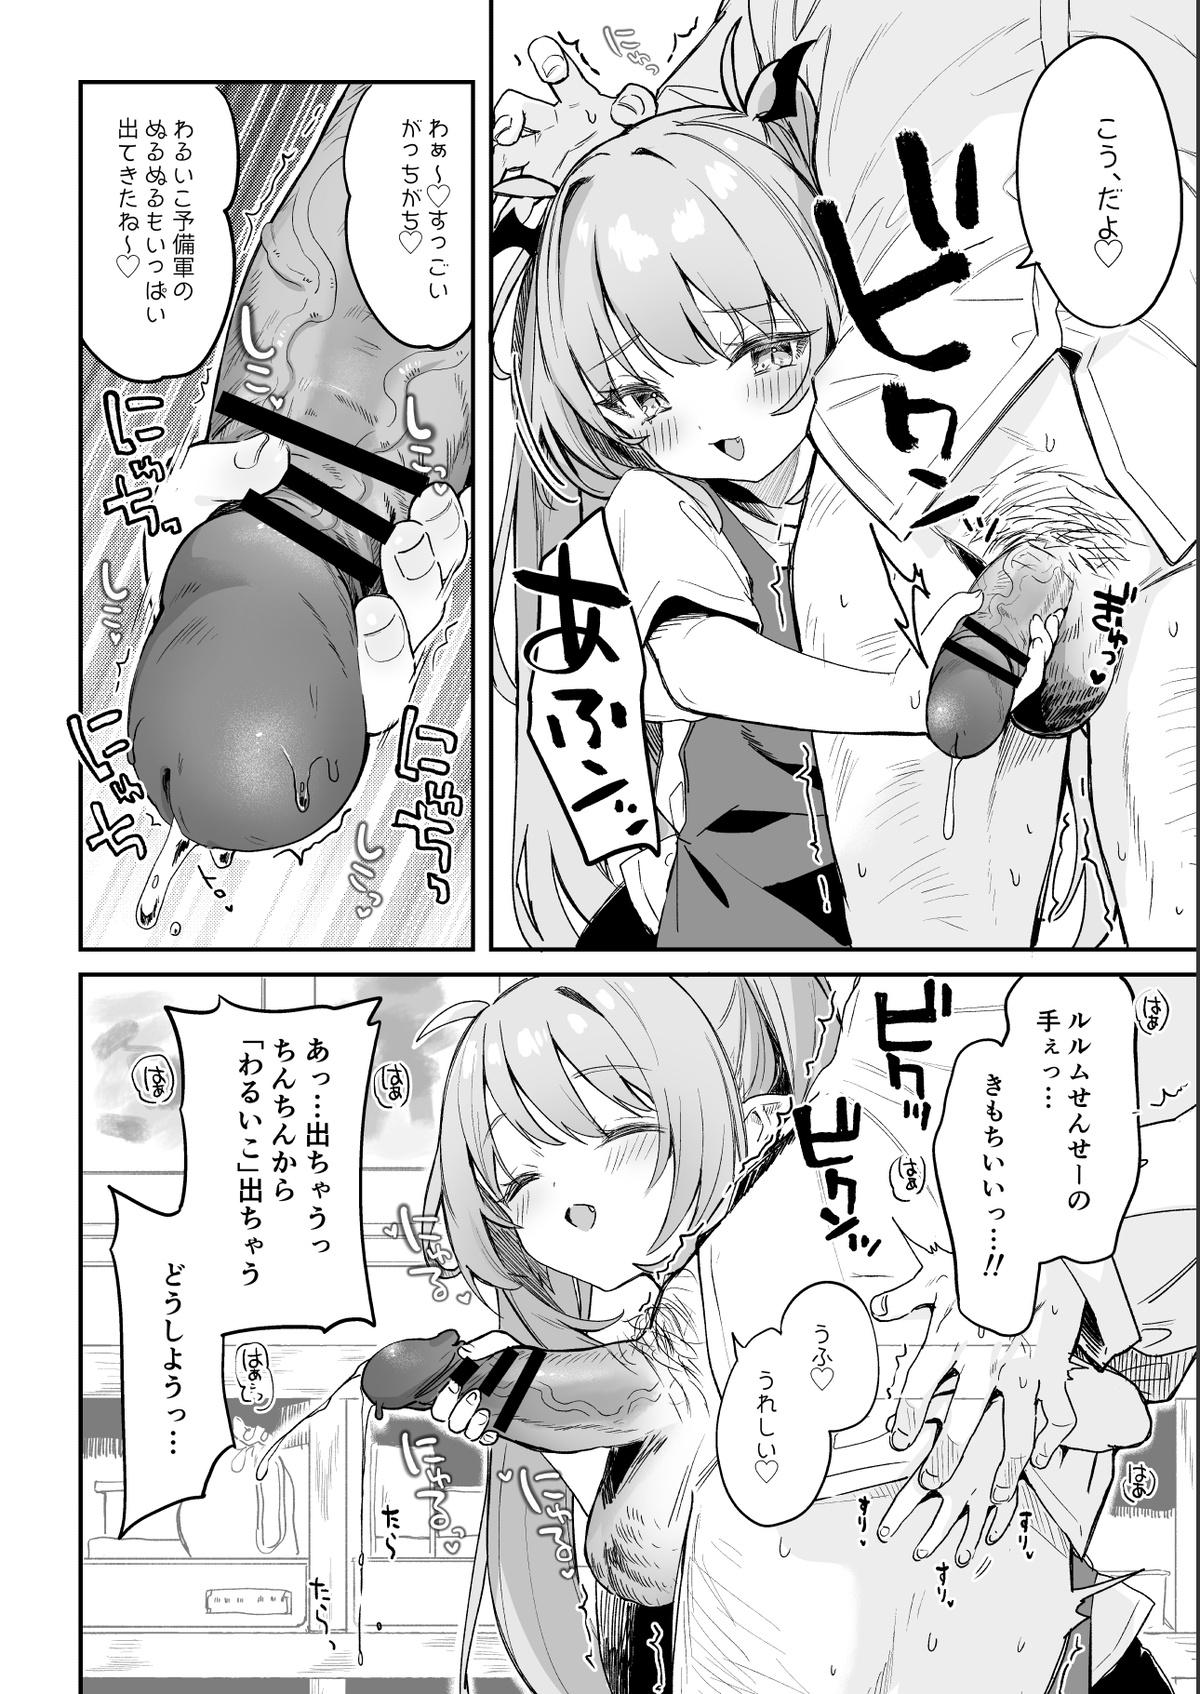 Gay Military [Tamano Kedama] Kodomo no Hi (Imishin) ni Mukete Manga o Kaku - Original Foursome - Page 6